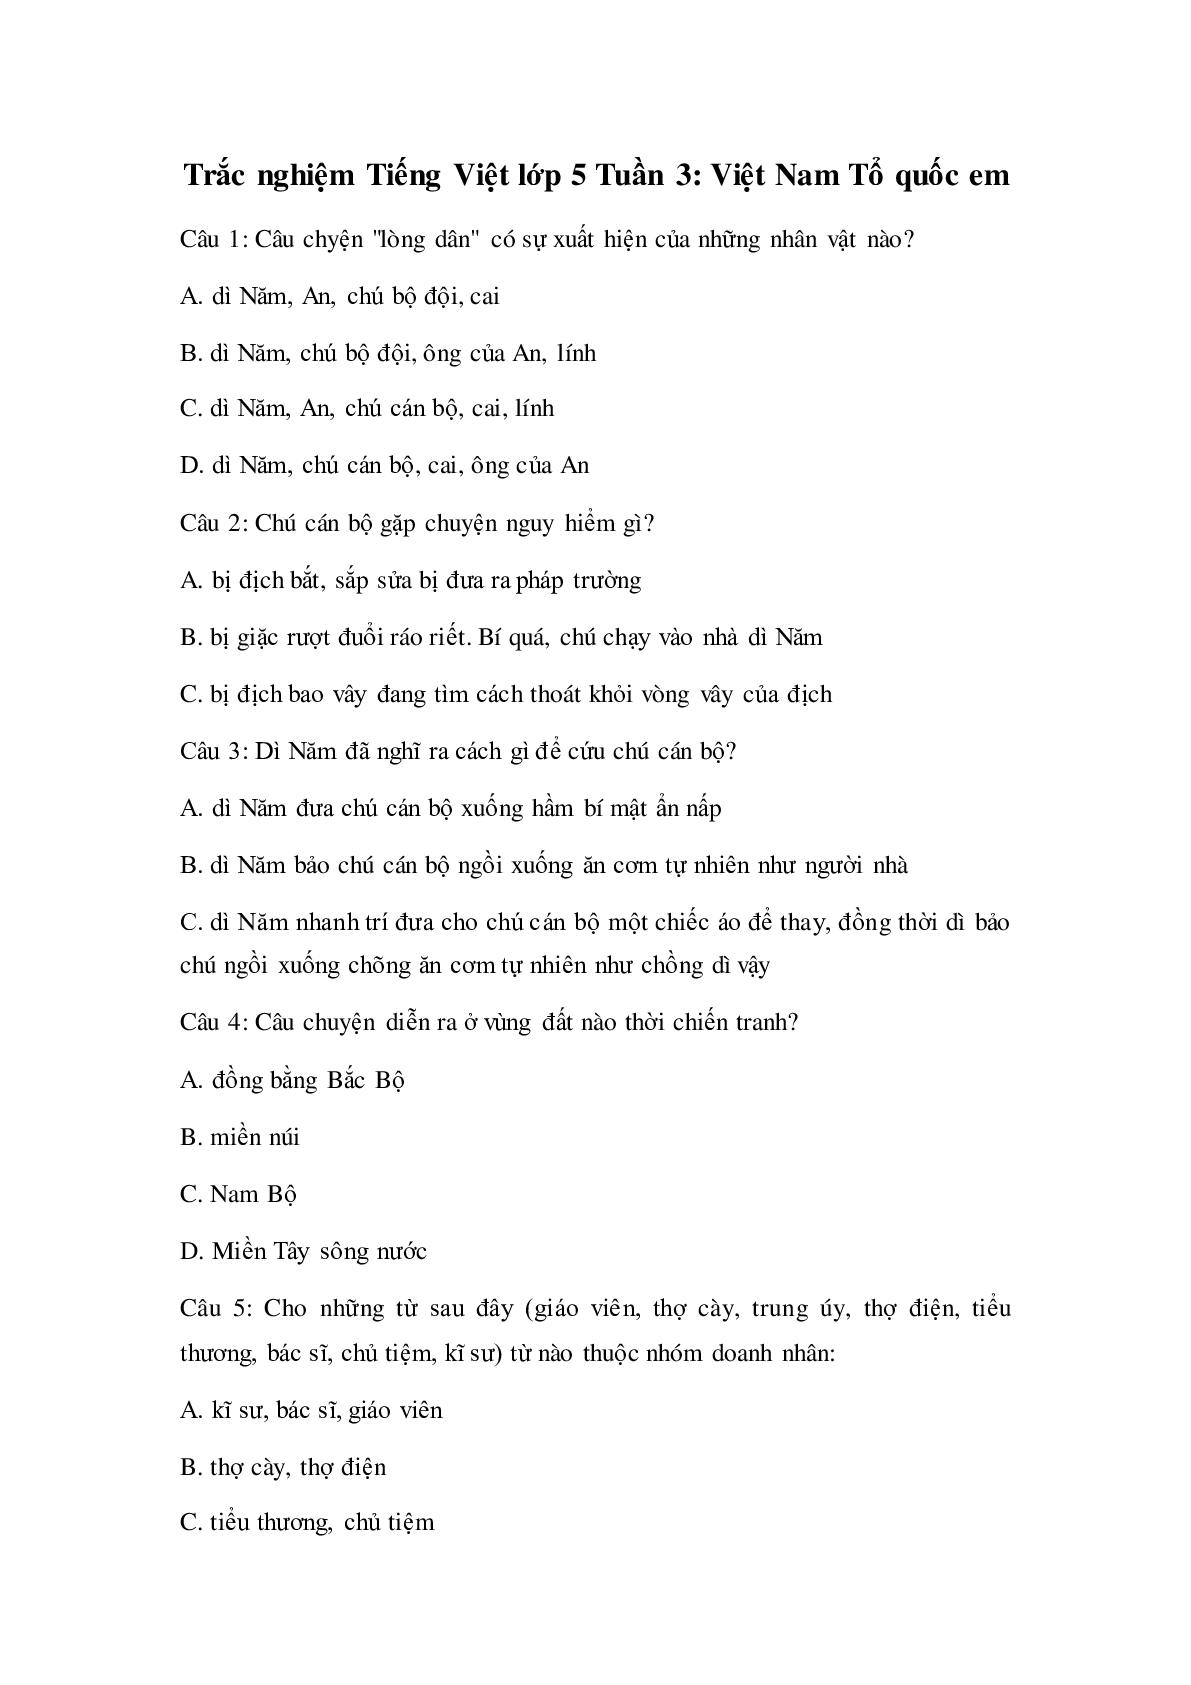 Trắc nghiệm Tiếng Việt lớp 5: Tuần 3 có đáp án (trang 1)